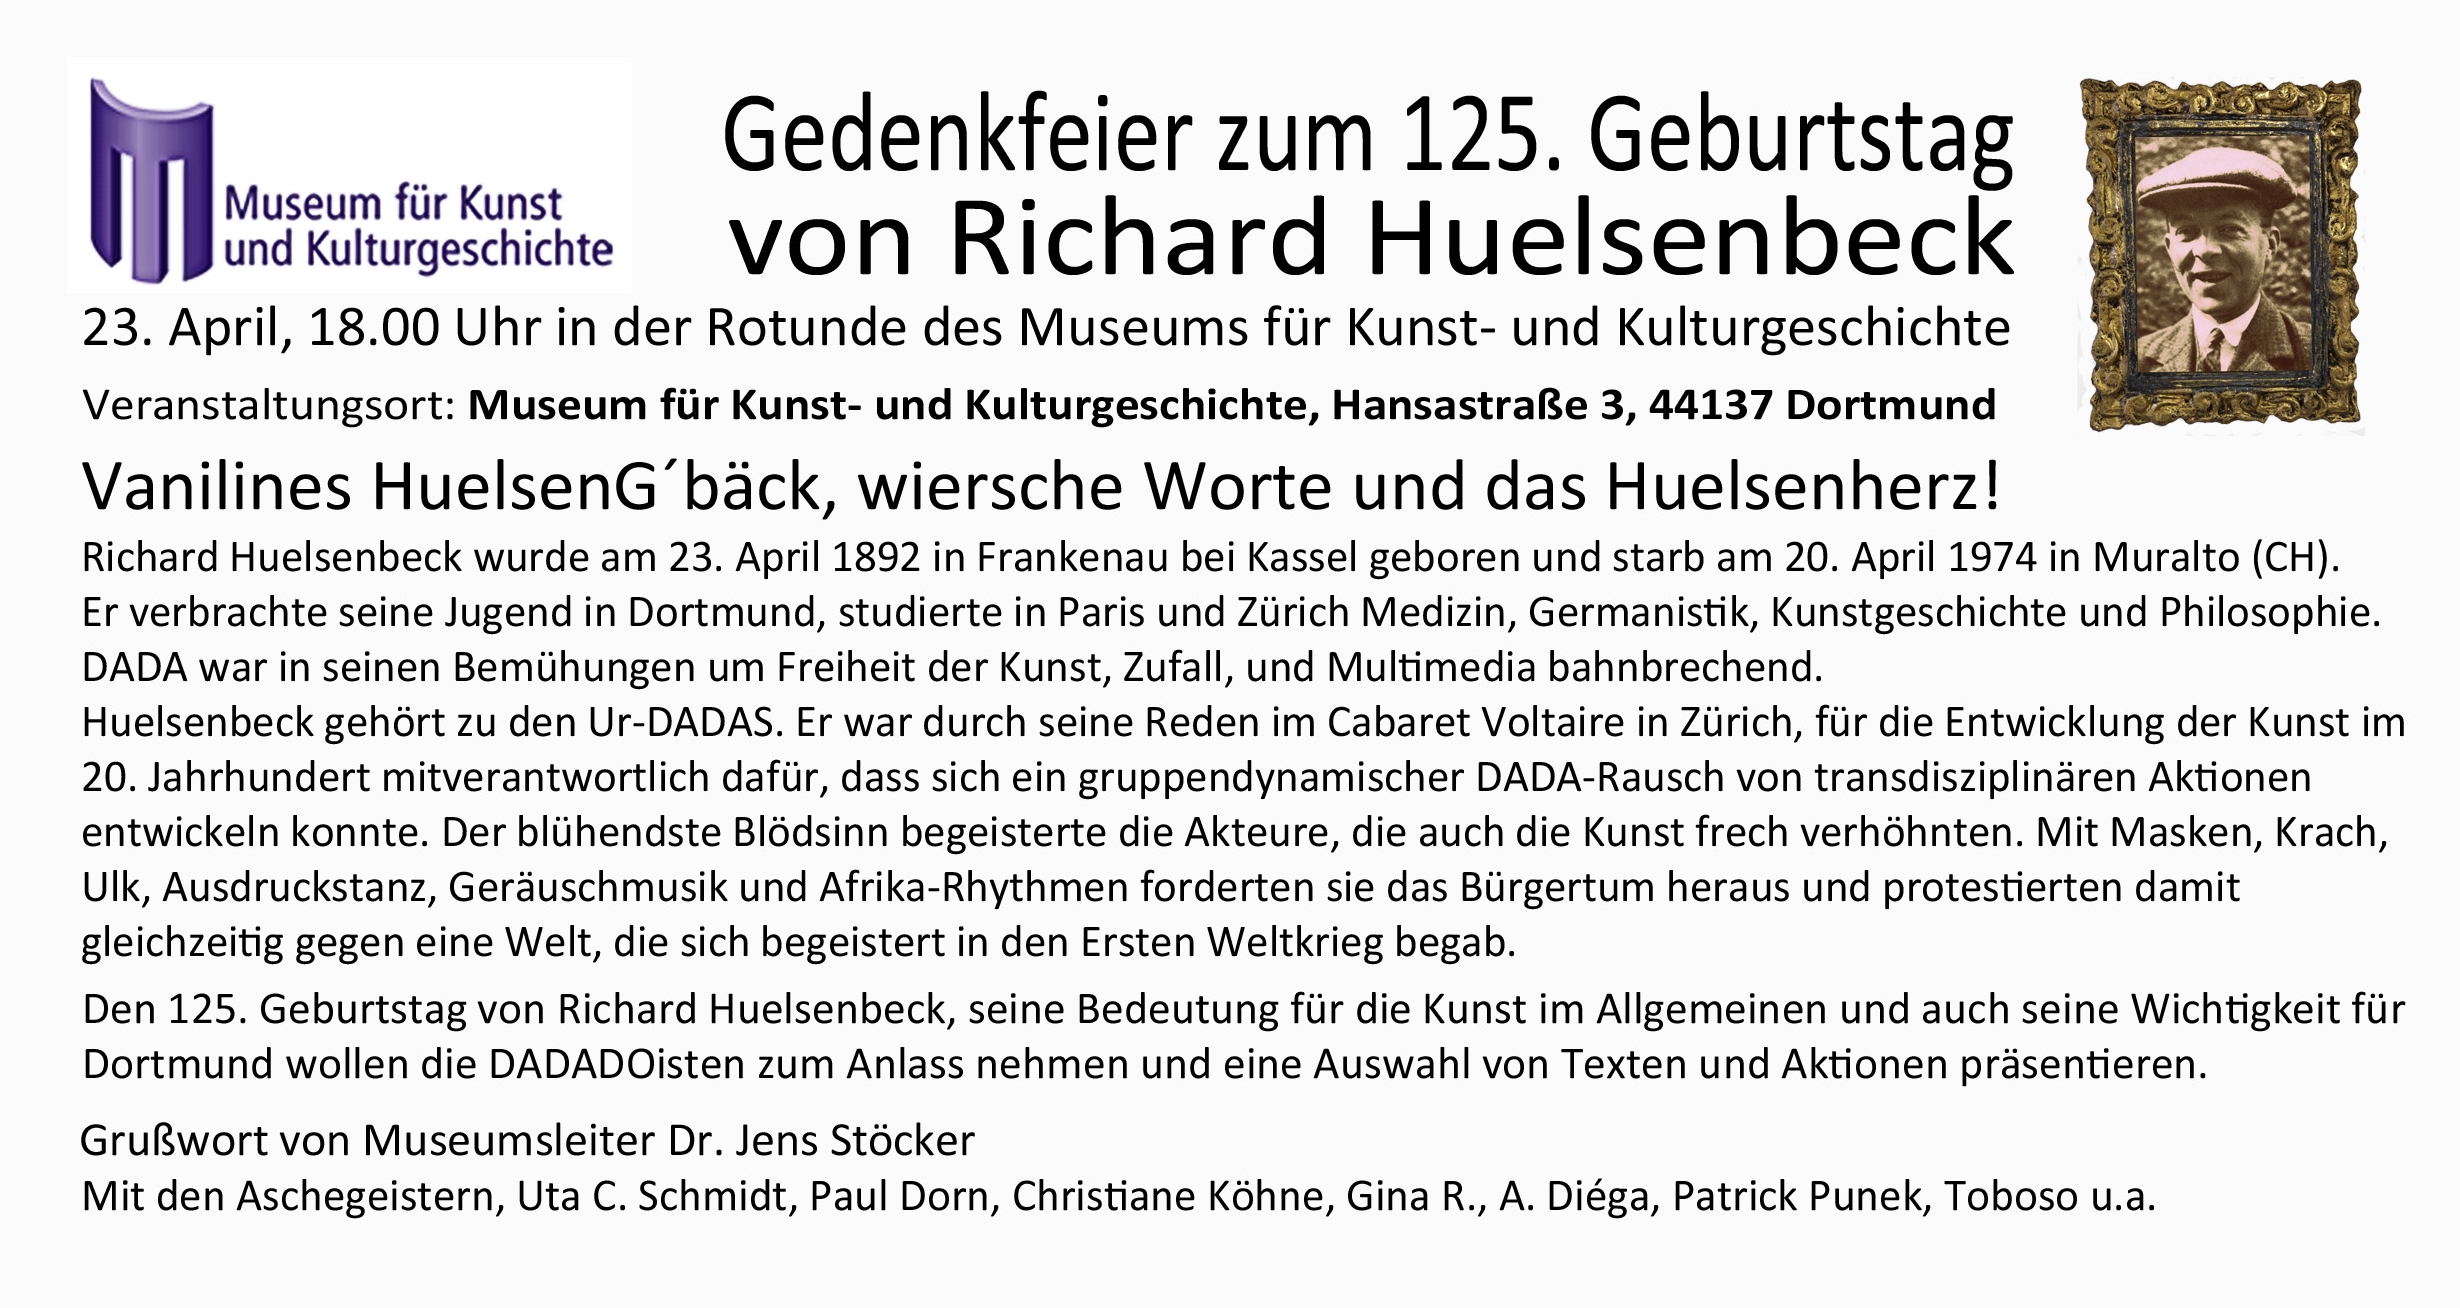 Richard Hülsenbeck zum 125. Geburtstag Gedenkfeier